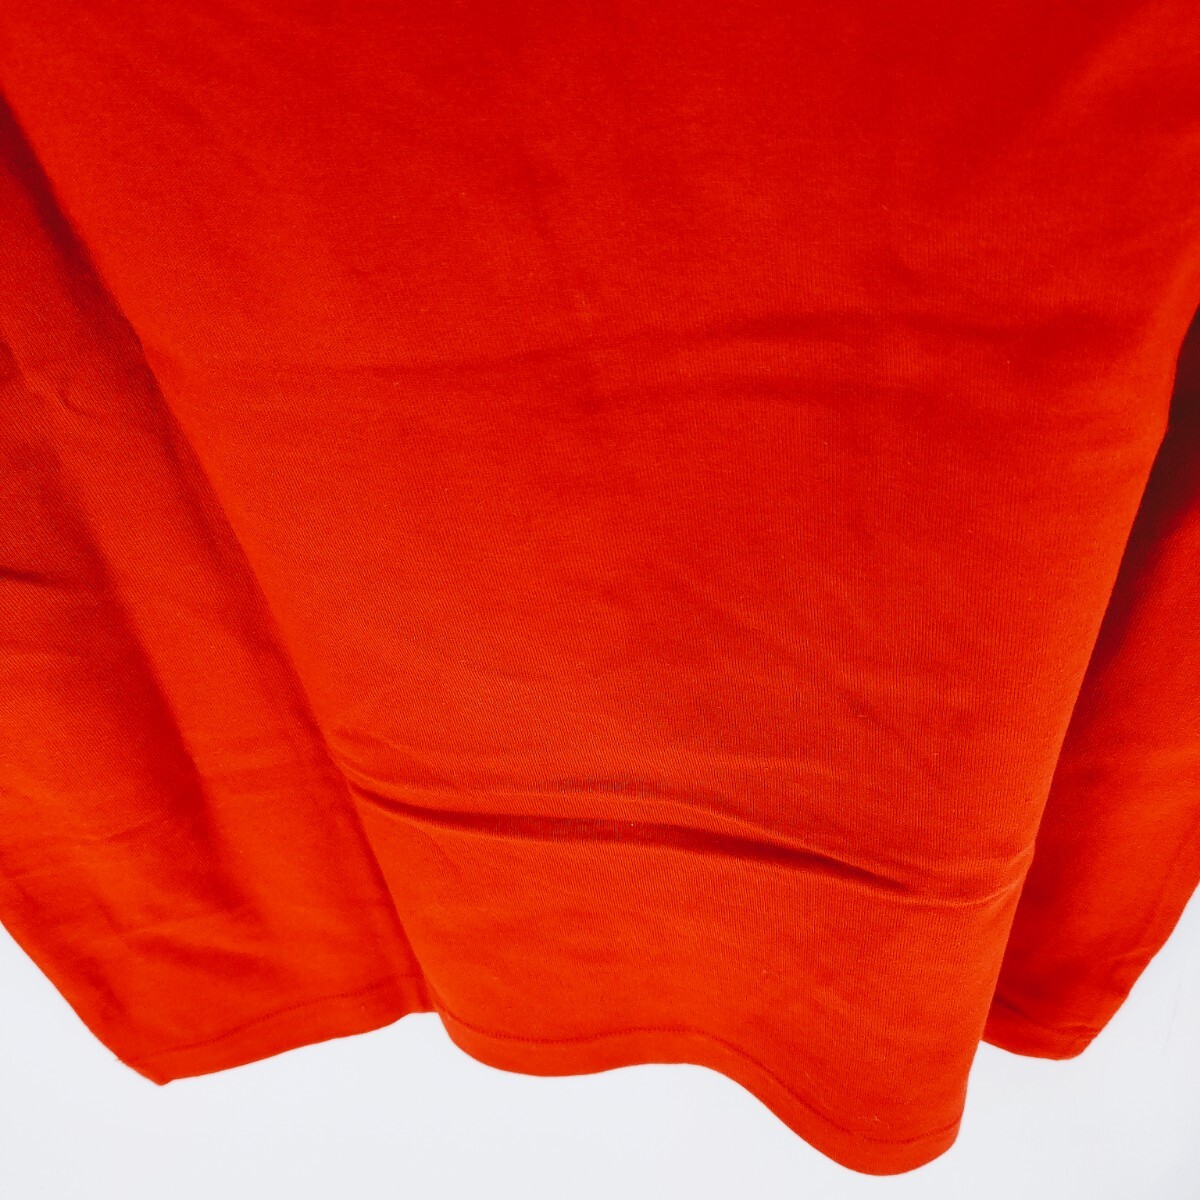 【美品】BURBERRY LONDON バーバリー ロンドン 半袖Tシャツ サイズM シャツ 無地 ロゴ 赤 レッド シャツ Tシャツ トップス カットソー A-1_画像6